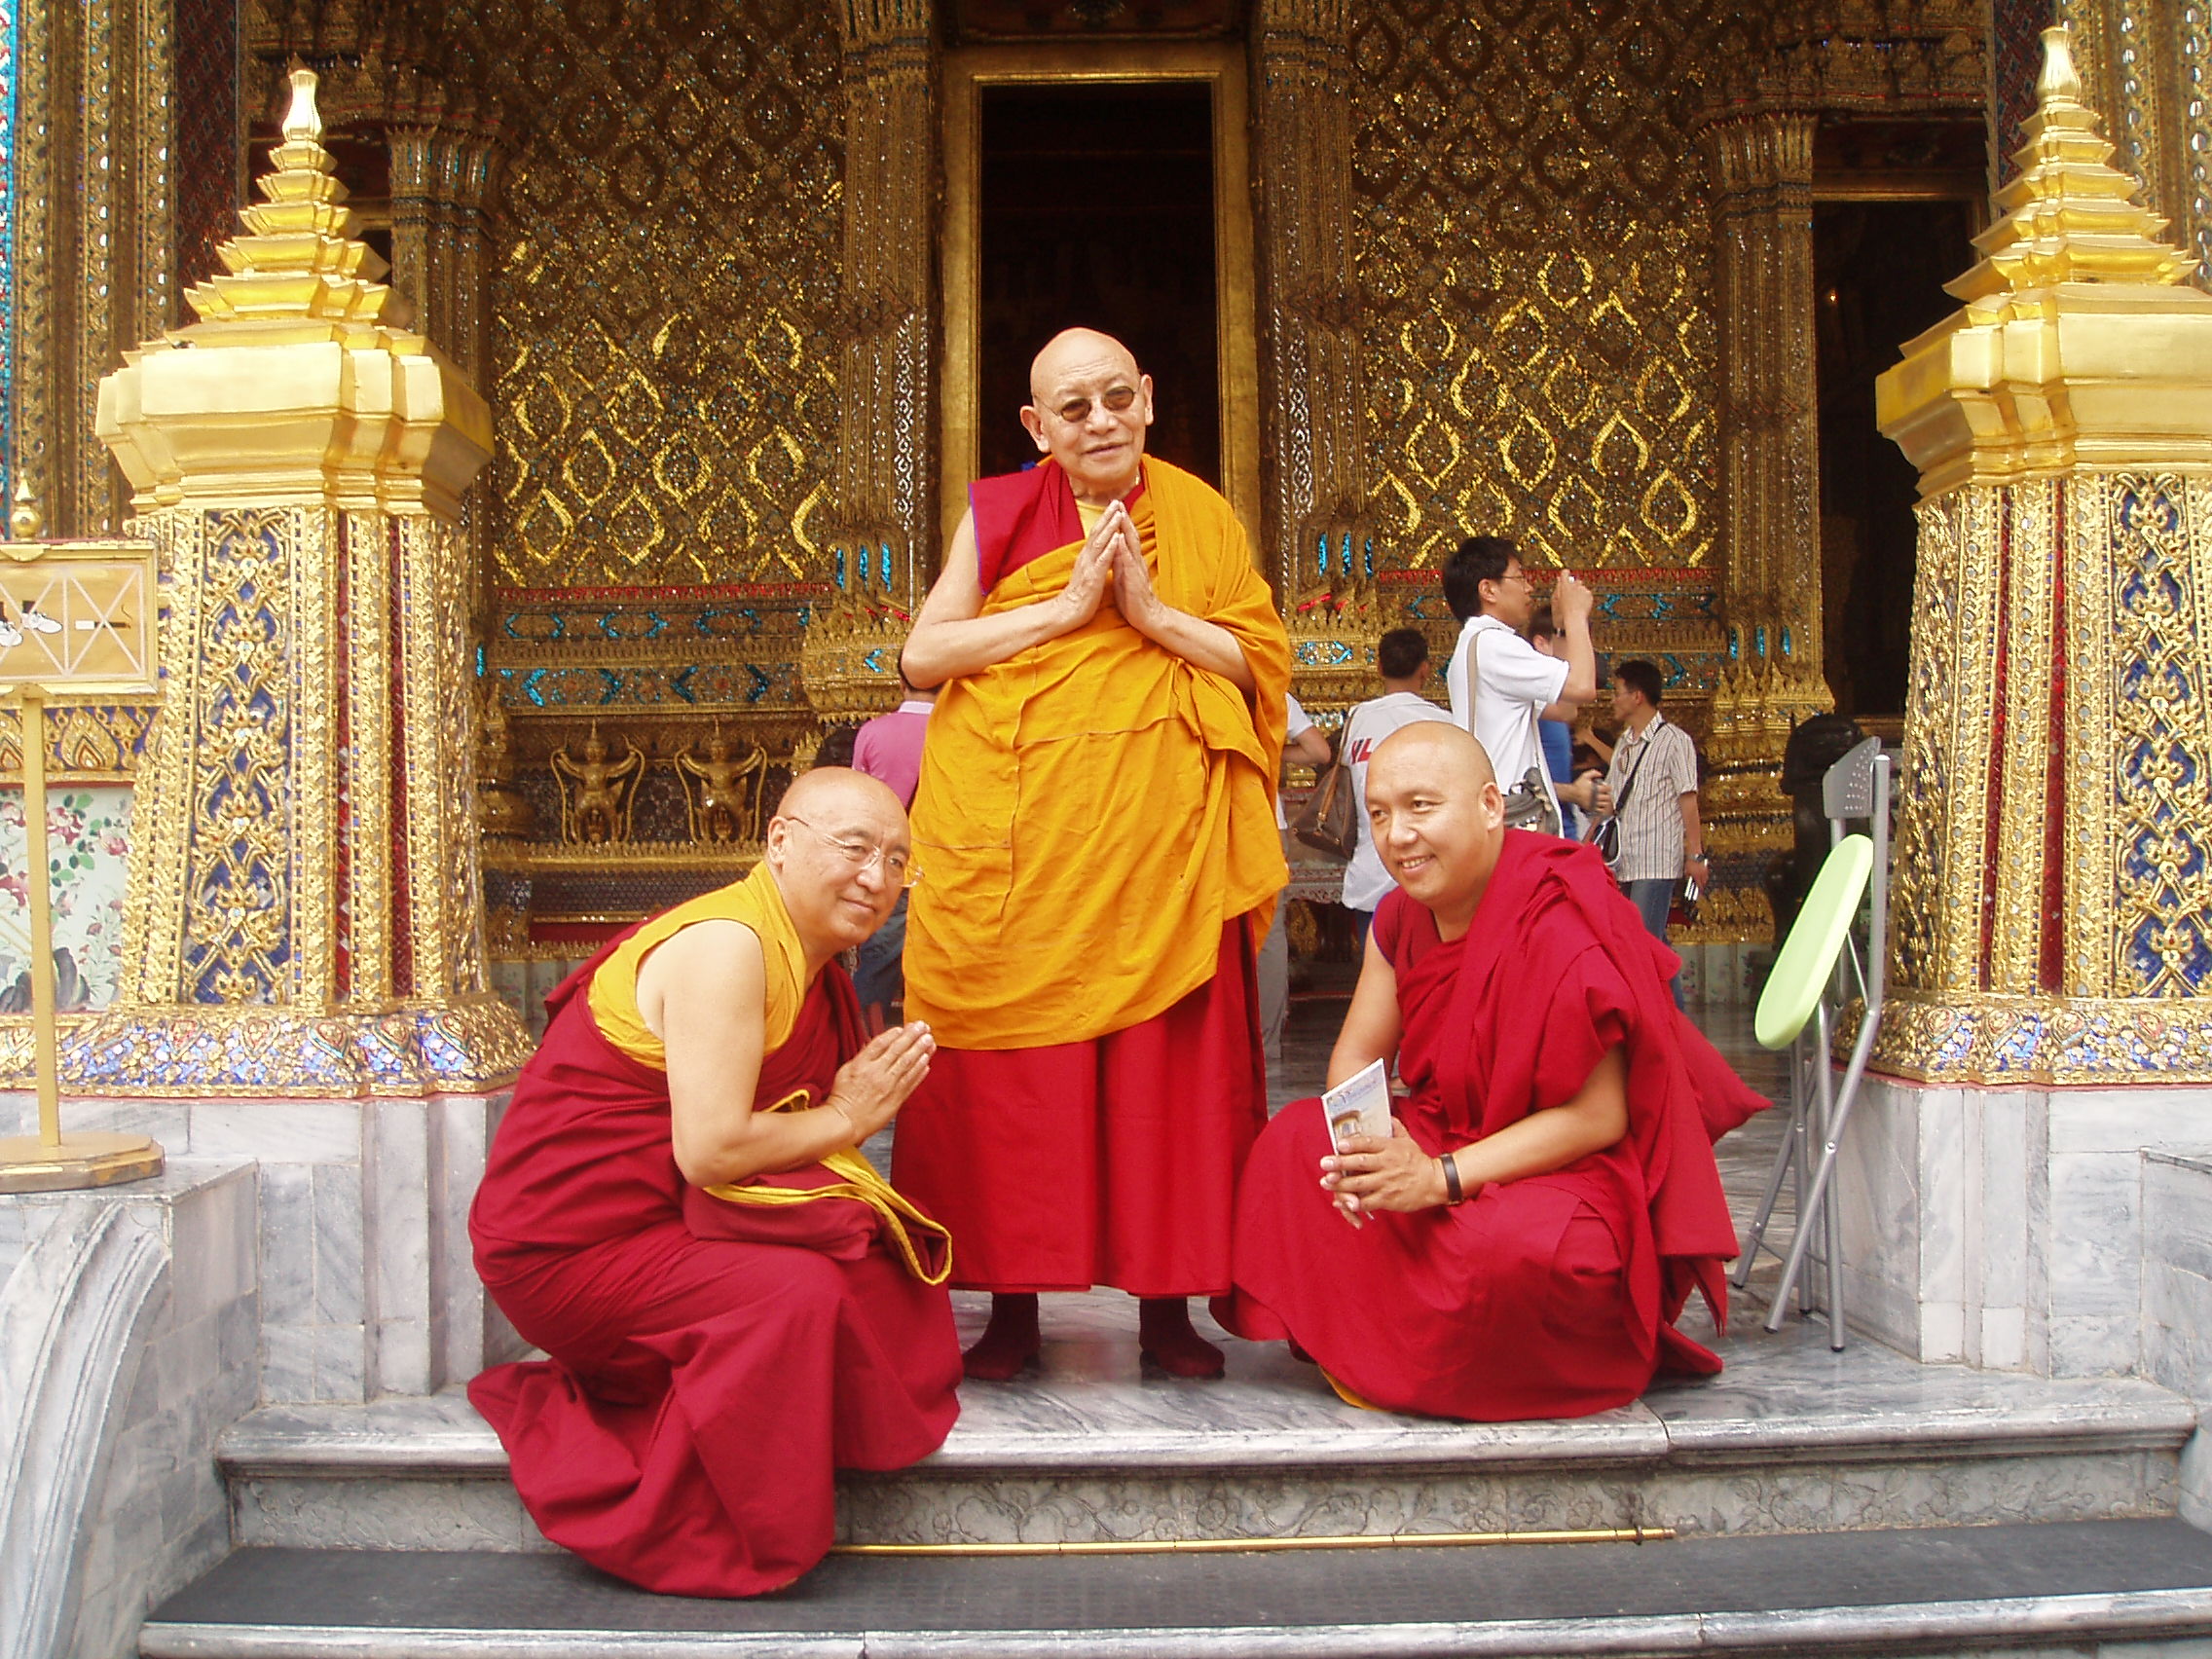 Kết quả hình ảnh cho pema wangyal rinpoche and kangyur rinpoche